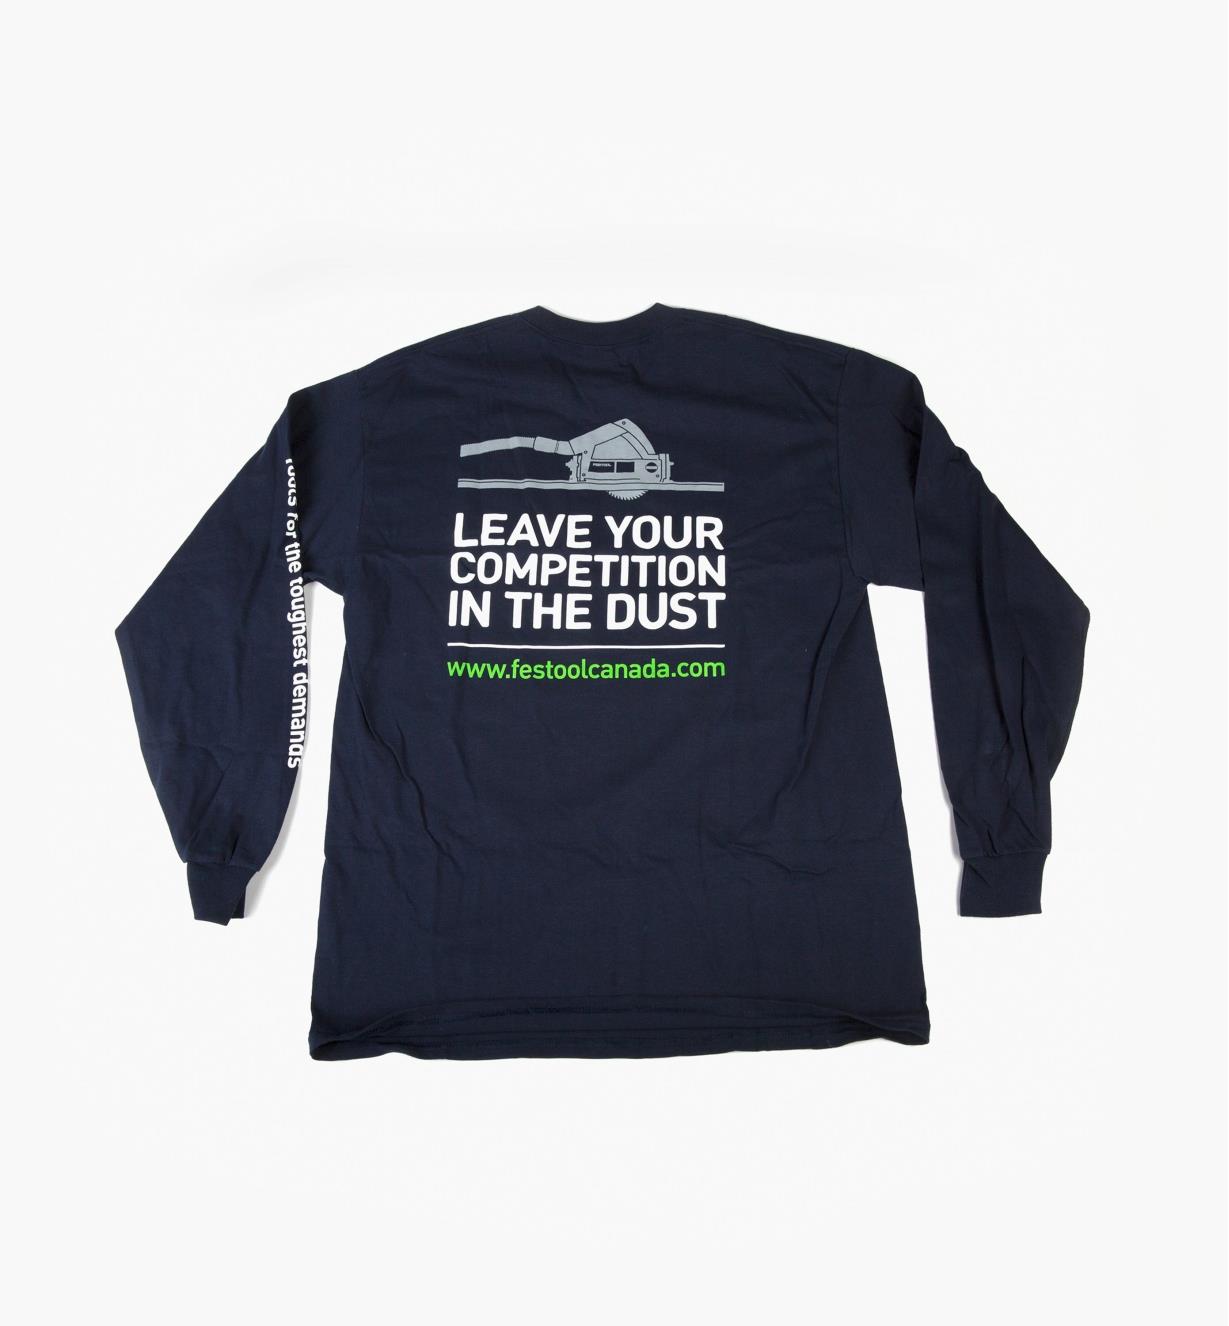 Derrière du T-shirt avec une image d'une scie circulaire et les mots « Leave your competition in the dust » imprimés en grosses lettres